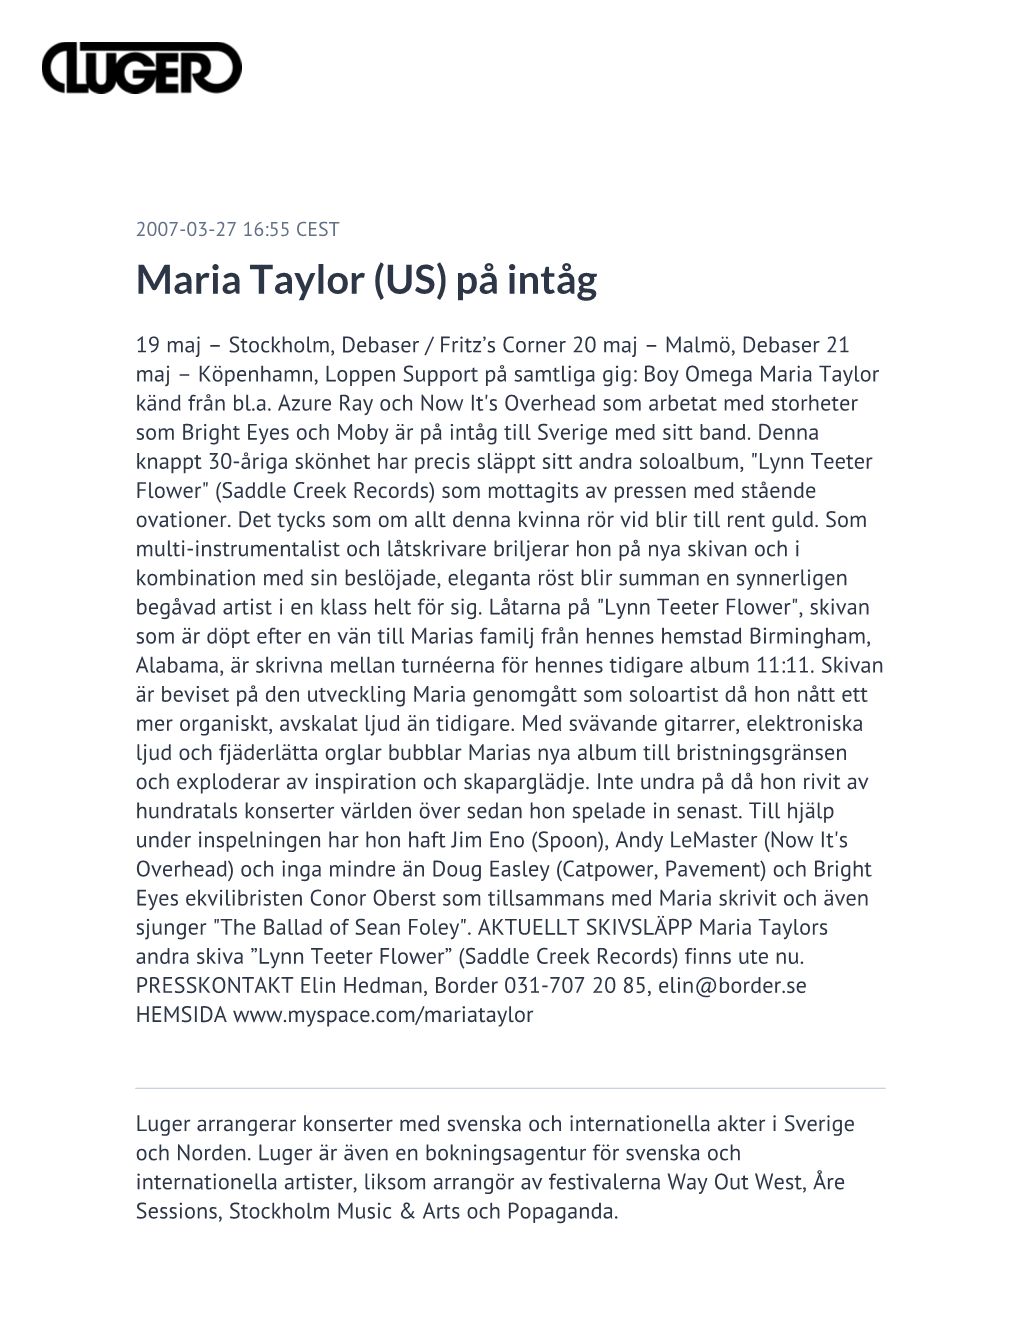 Maria Taylor (US) På Intåg